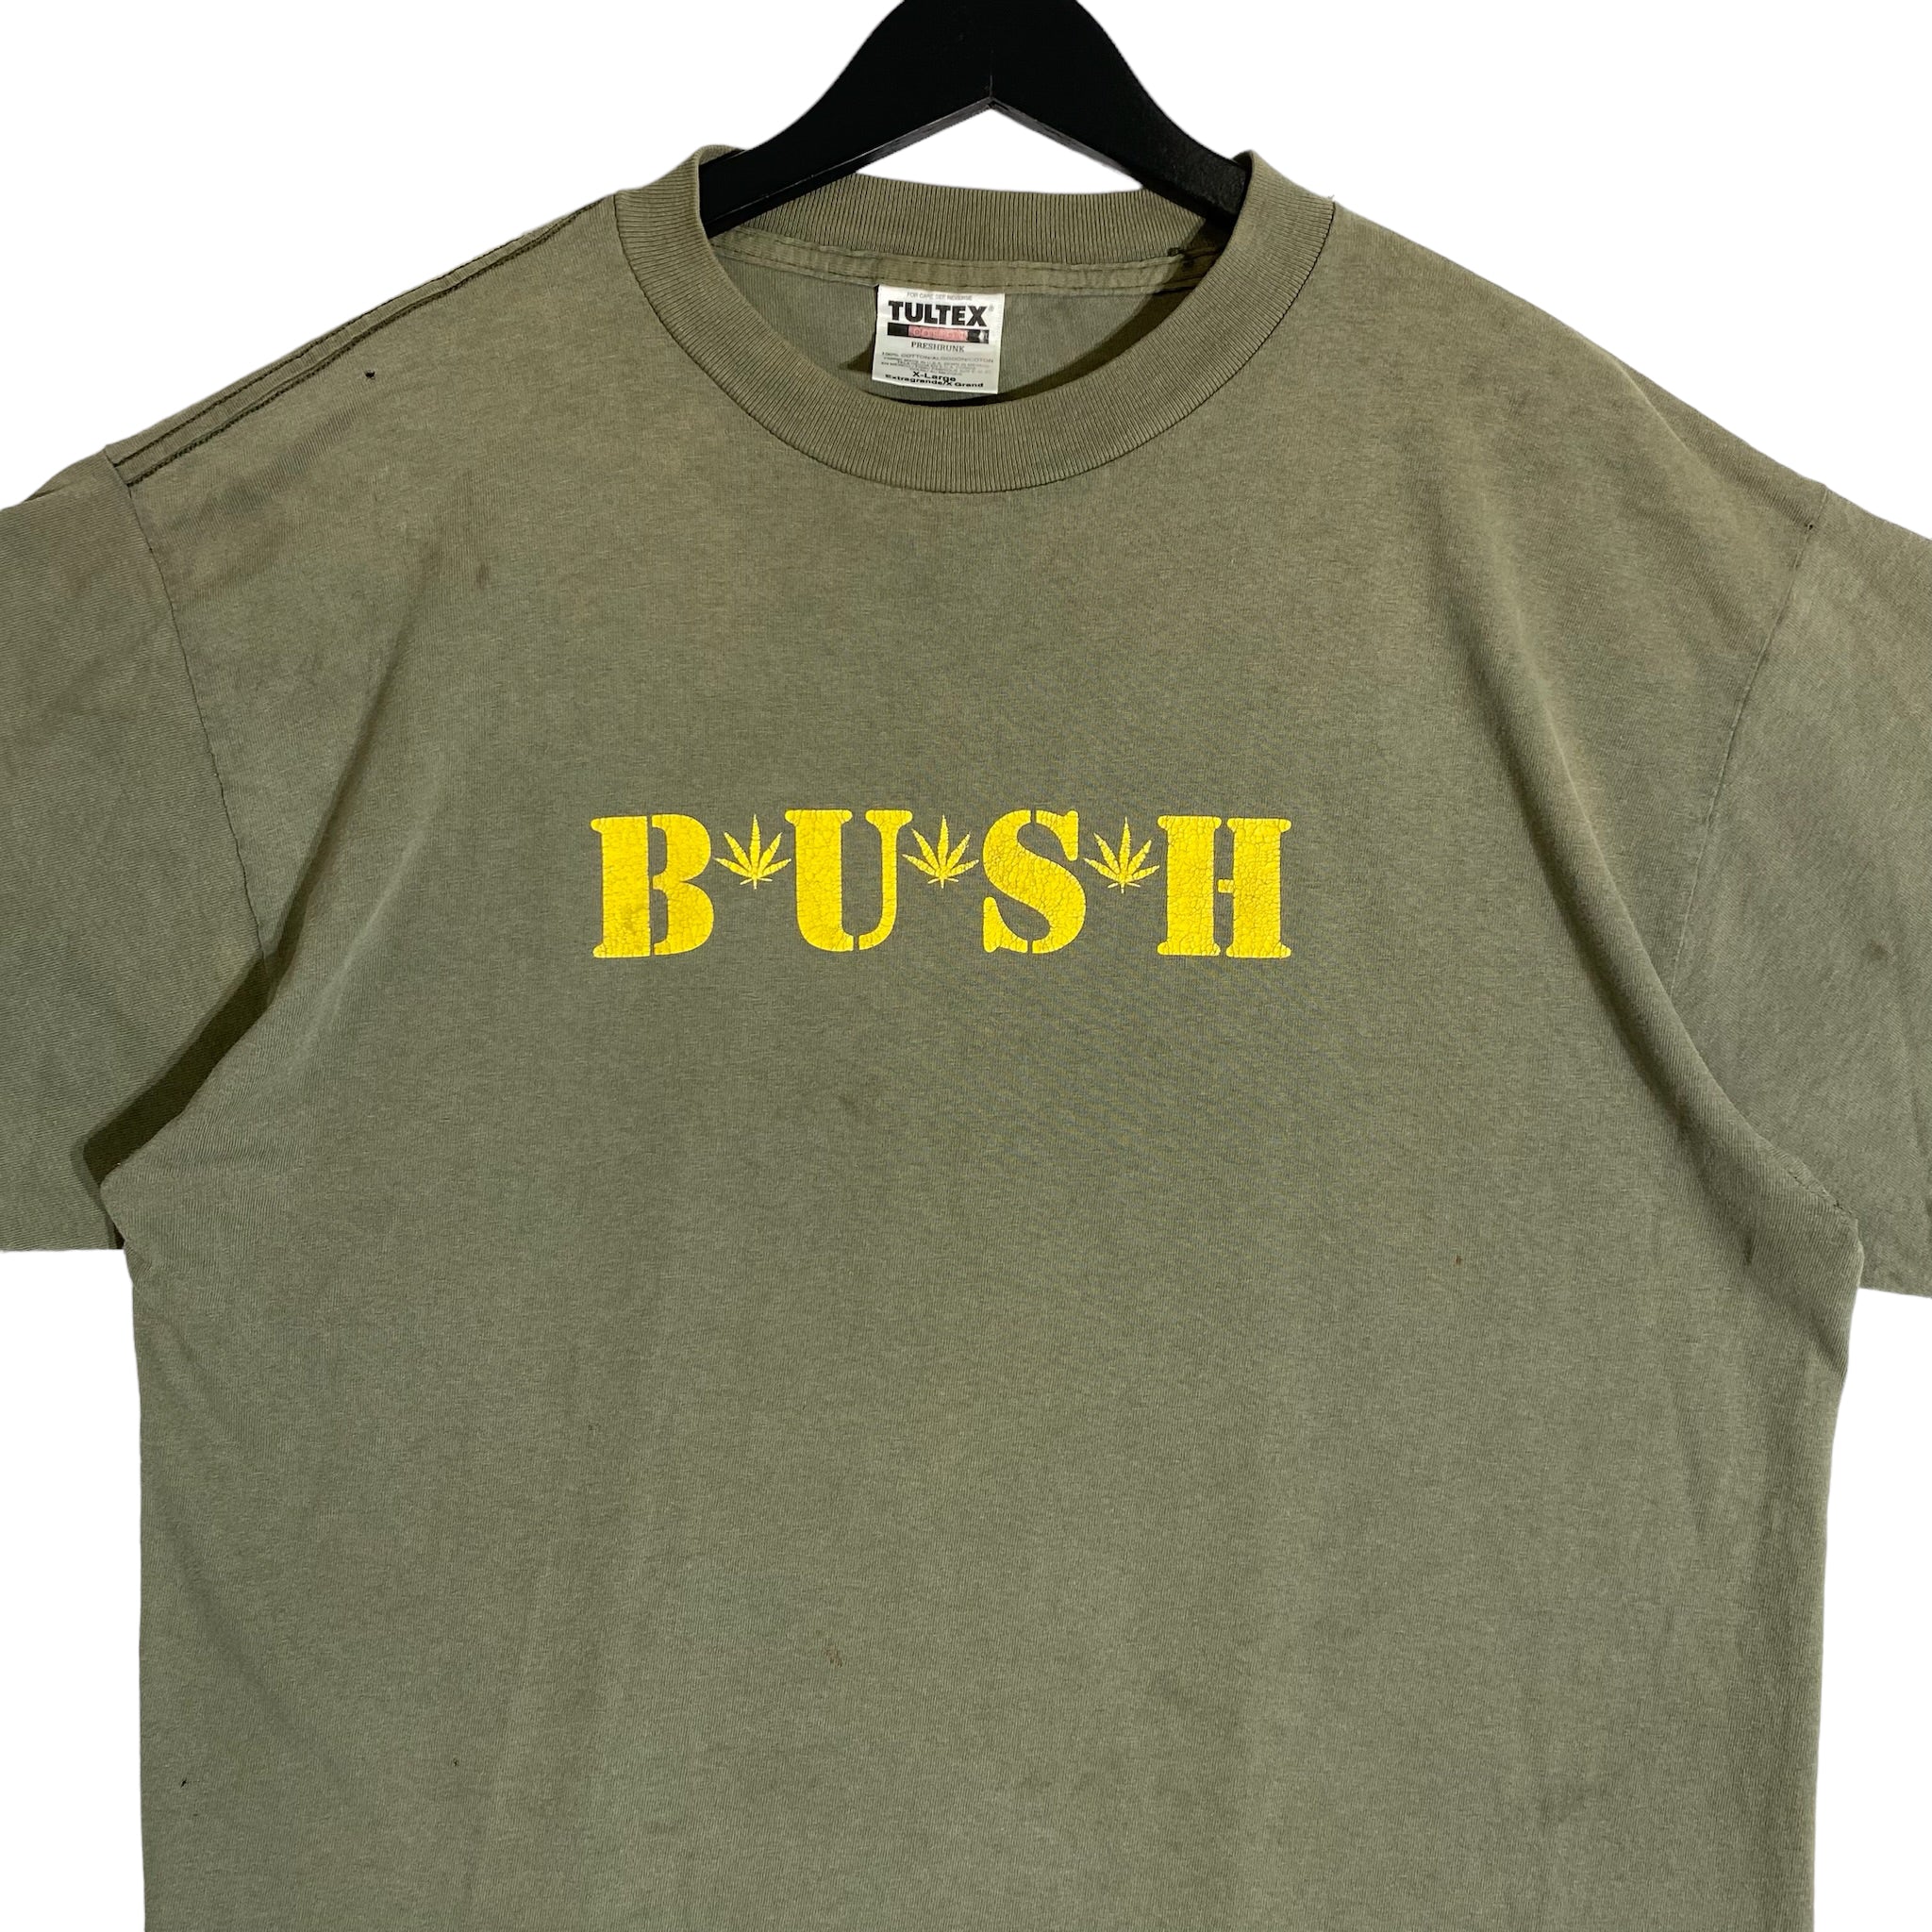 Vintage Bush Tee 90s